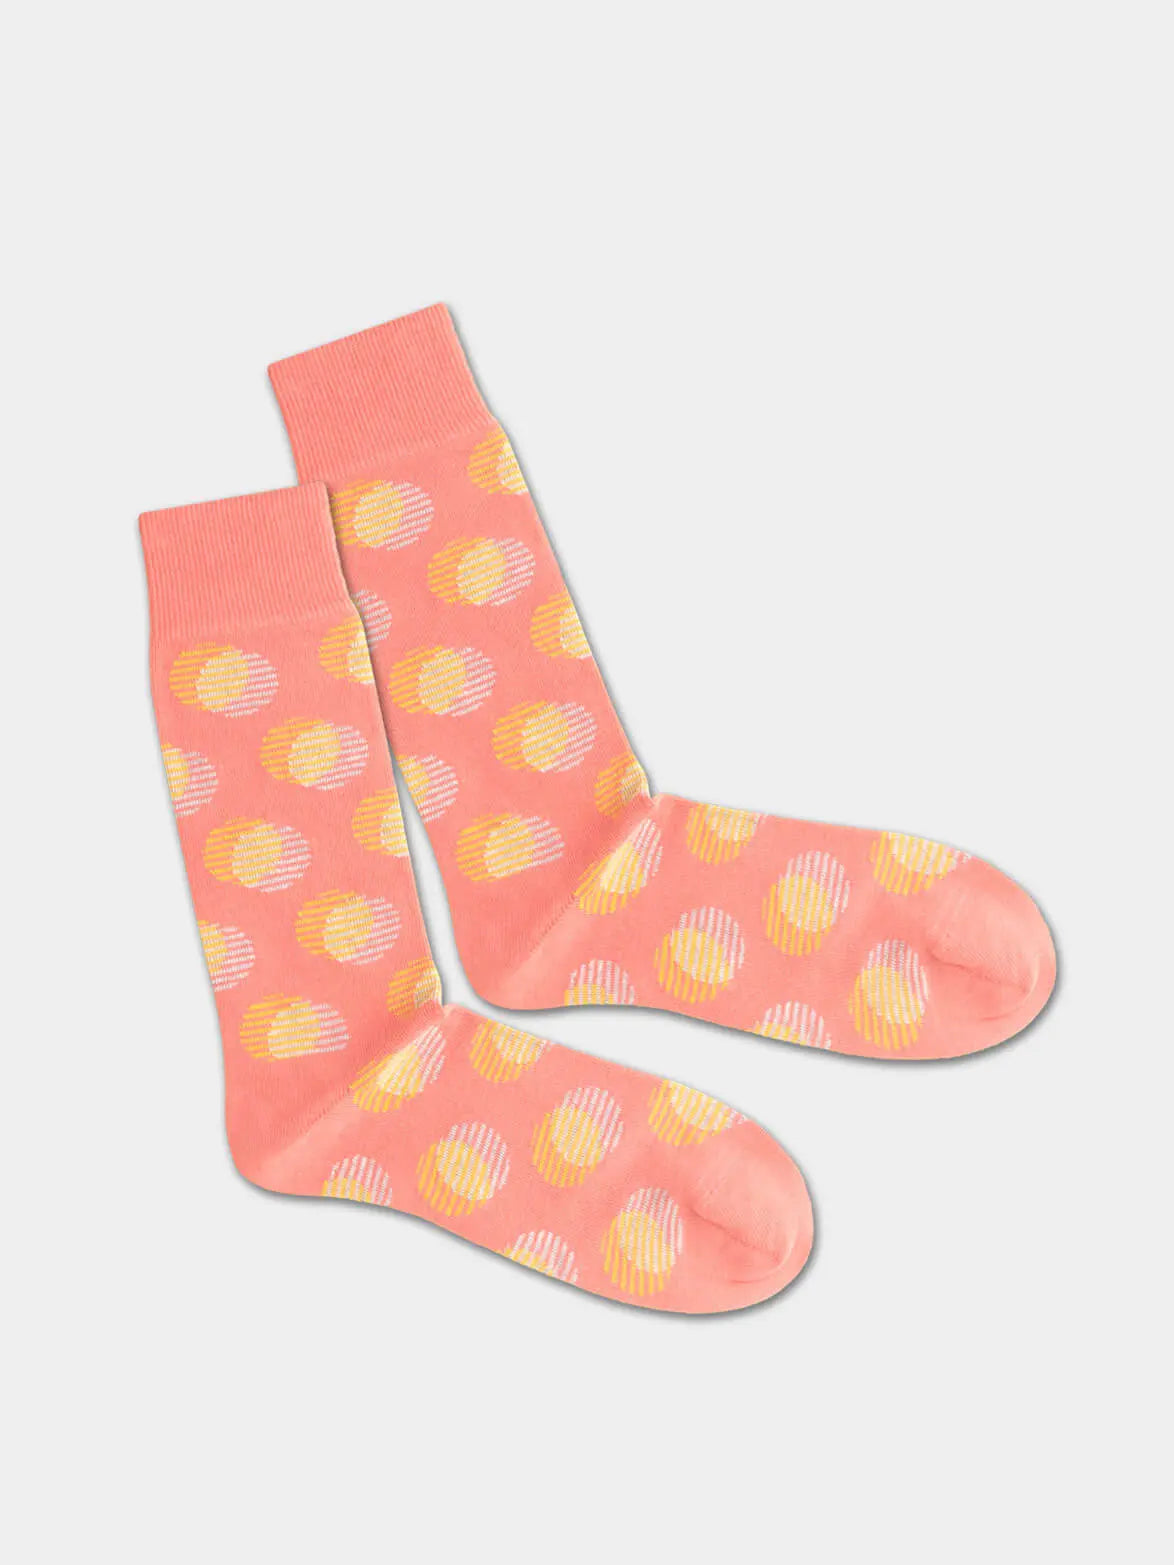 - Socken in Orange mit Punkte Motiv/Muster von DillySocks